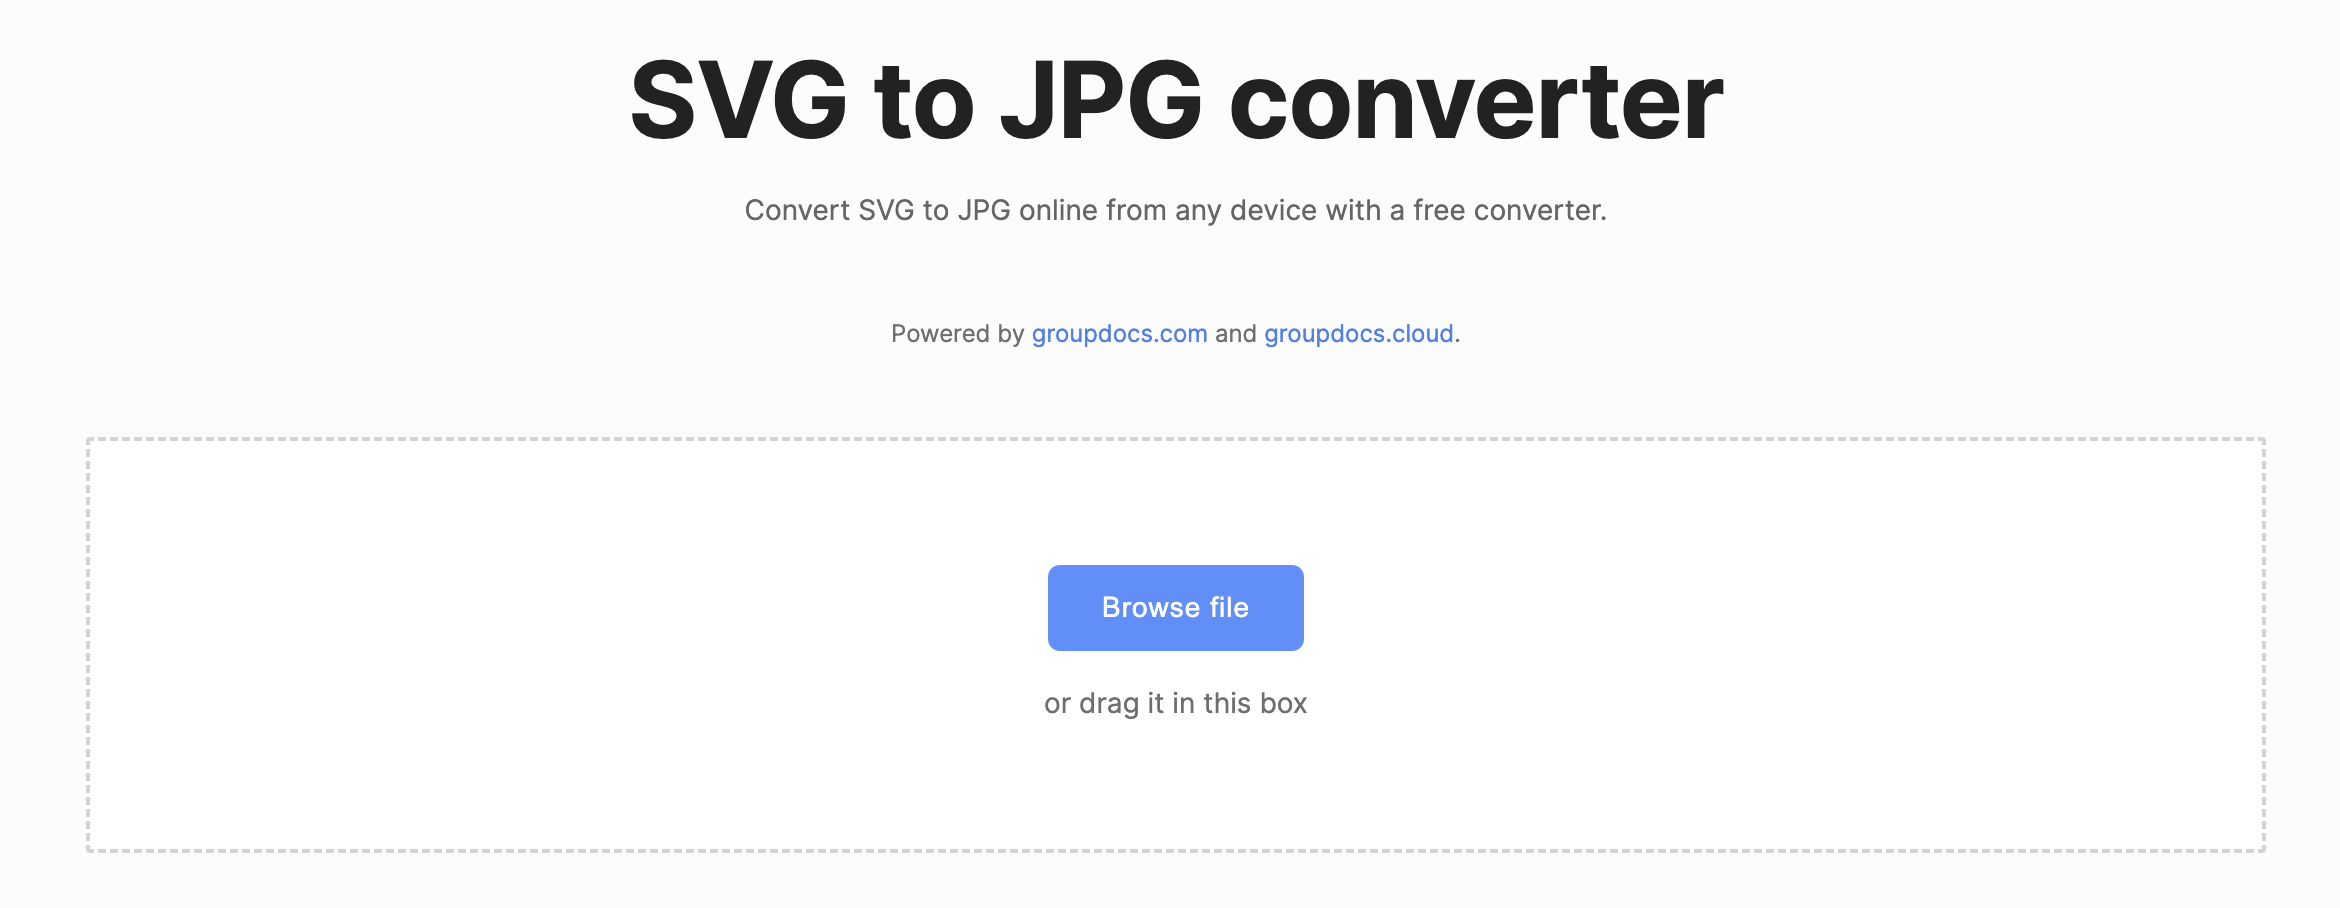 Konvertieren Sie SVG online in JPG